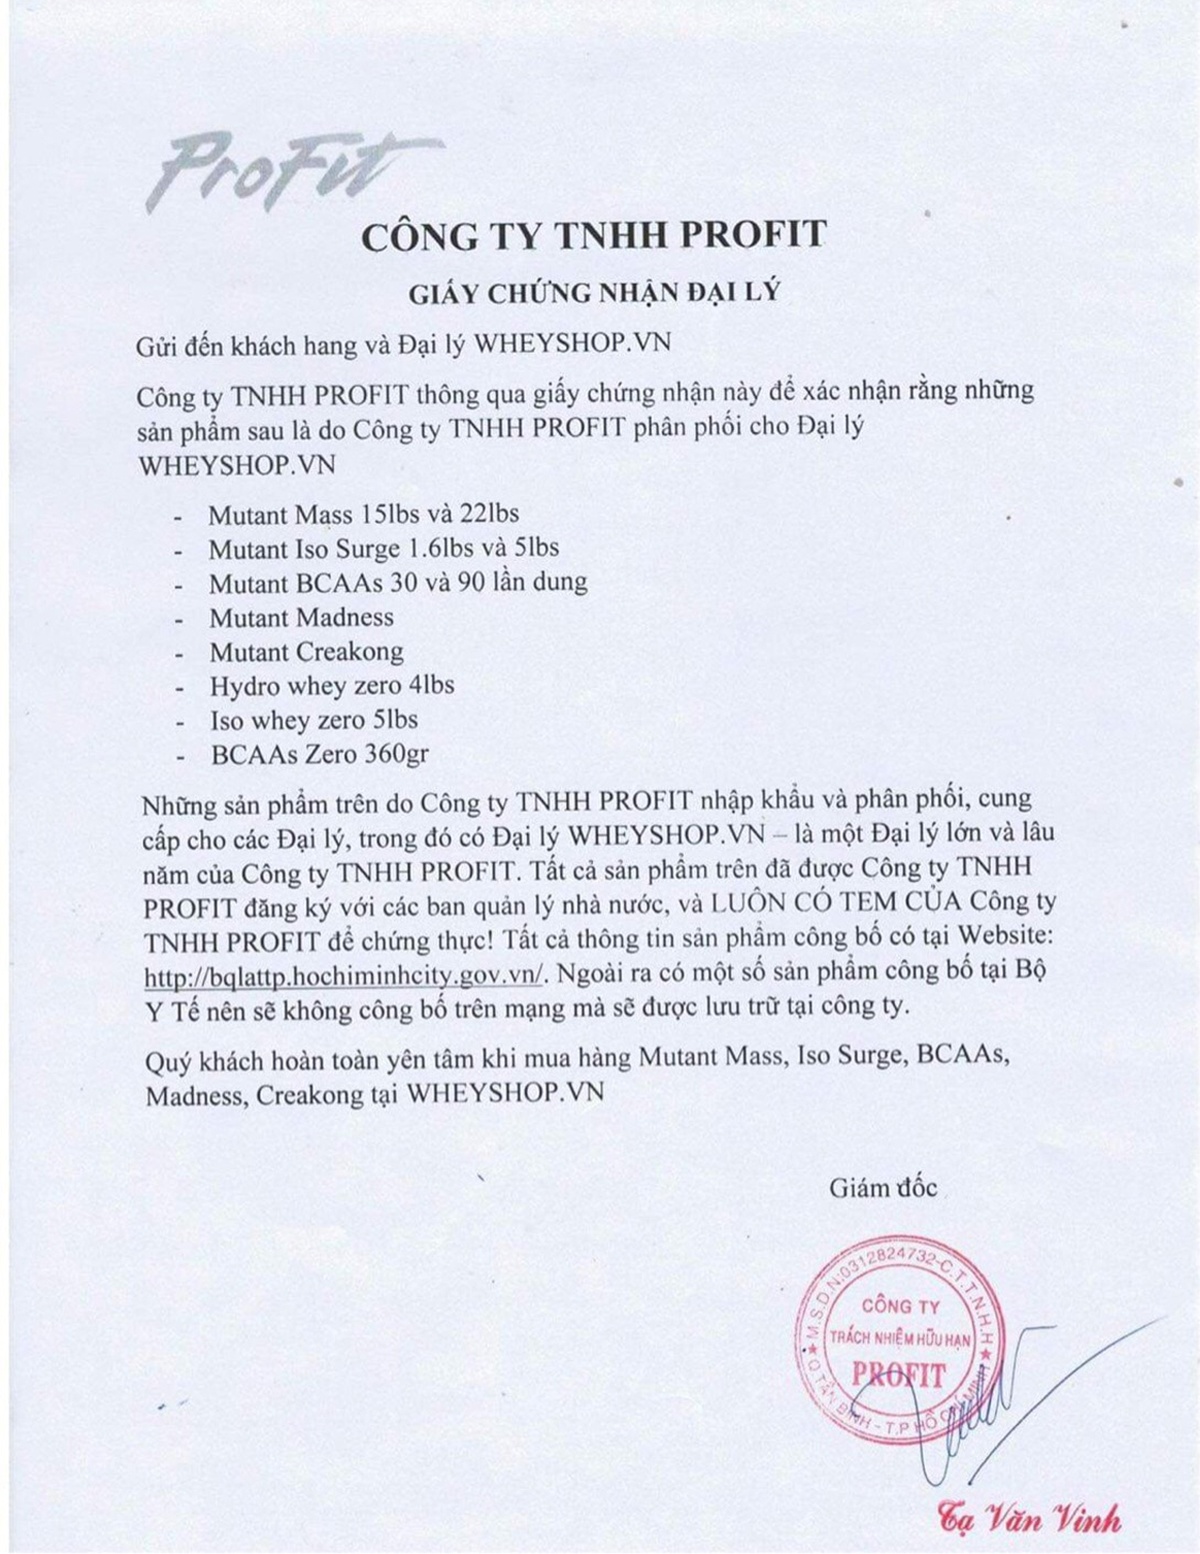 Mua hàng sản phẩm Mutant ở đâu chính hãng, uy tín, giá rẻ tại Hà Nội TpHCMCông ty TNHH Profit là công ty lớn hàng đầu Việt Nam trong lĩnh vực nhập khẩu với...